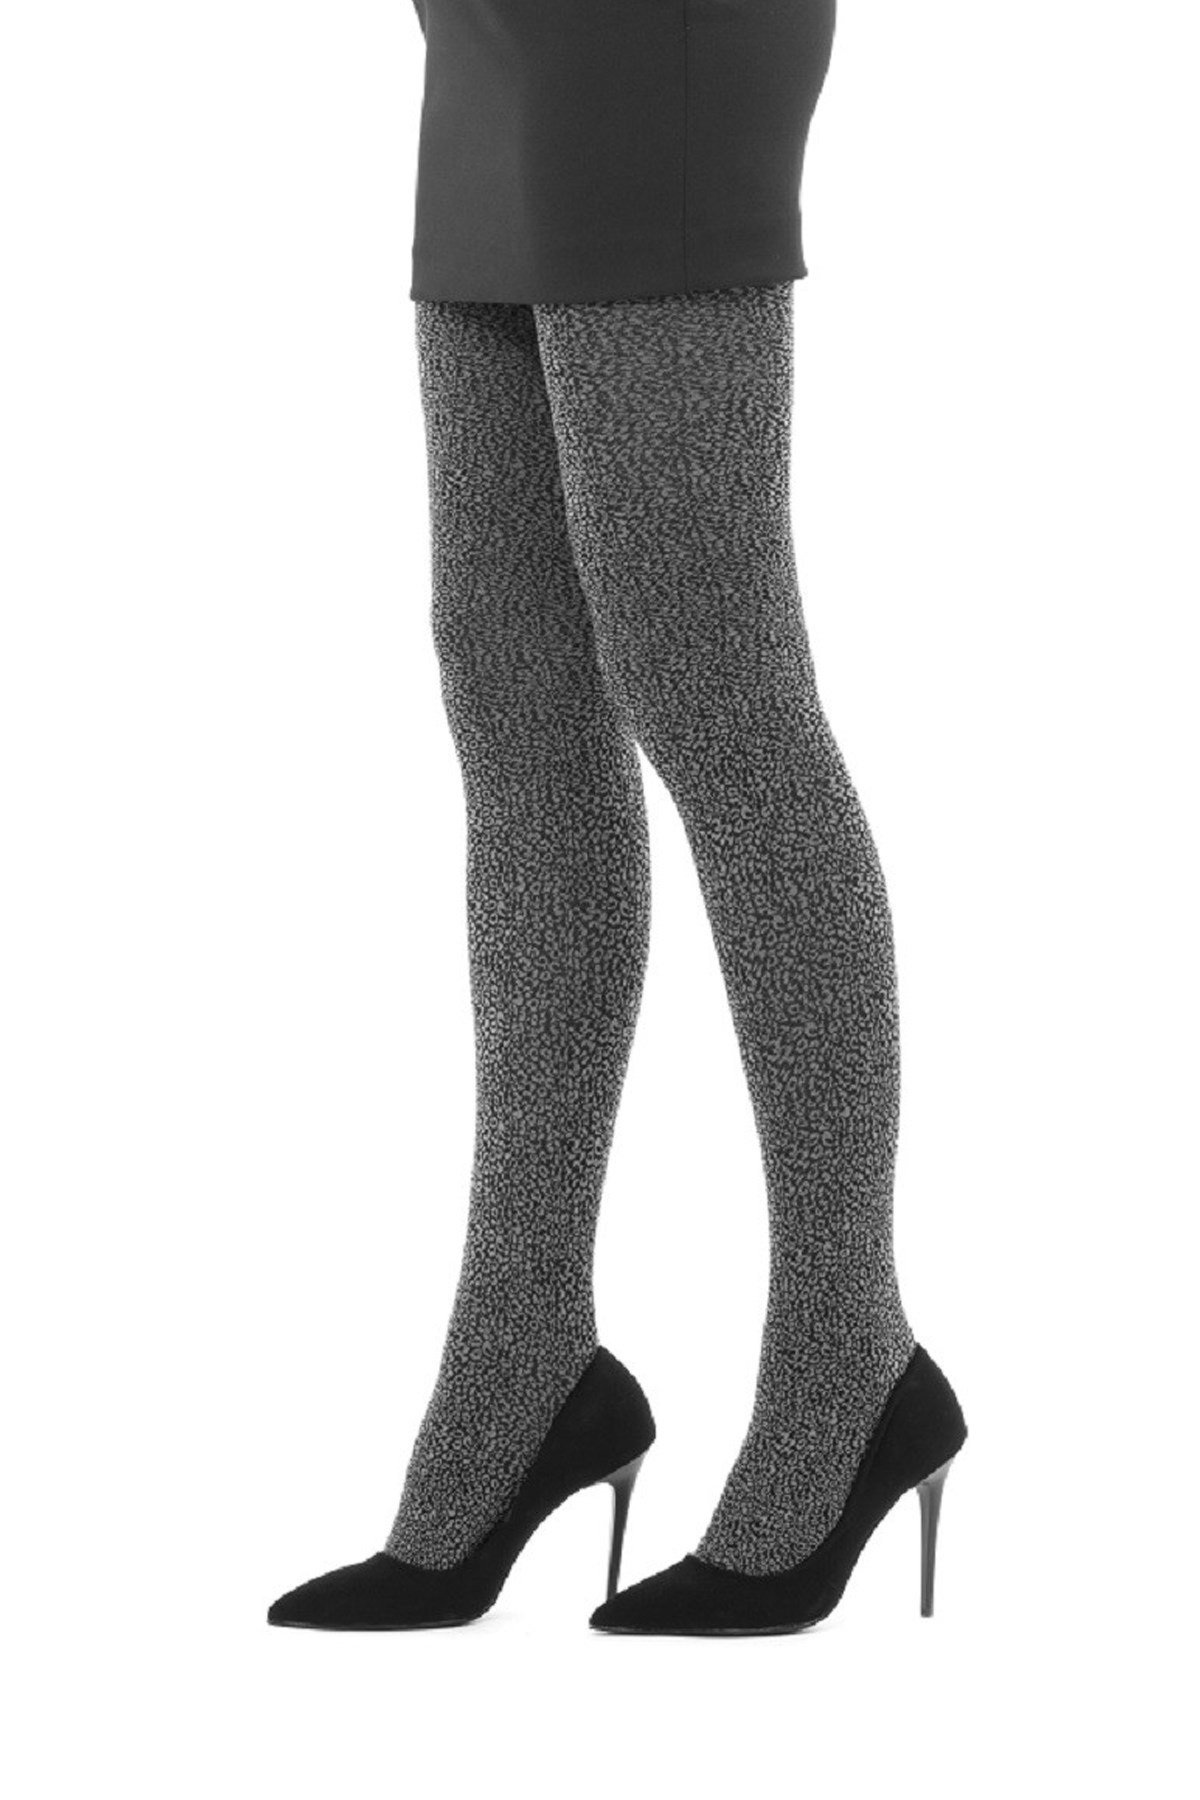 İtaliana Nisa Bayan Külotlu Çorap 2267 Gri 2 Yeni Sezon! Moda! Ürünler  Rakipsiz Fiyatlar İç Giyim, Ev Tekstili, Kozmetik, Çeyiz ve Daha Fazlası |  yoncatoptan.com